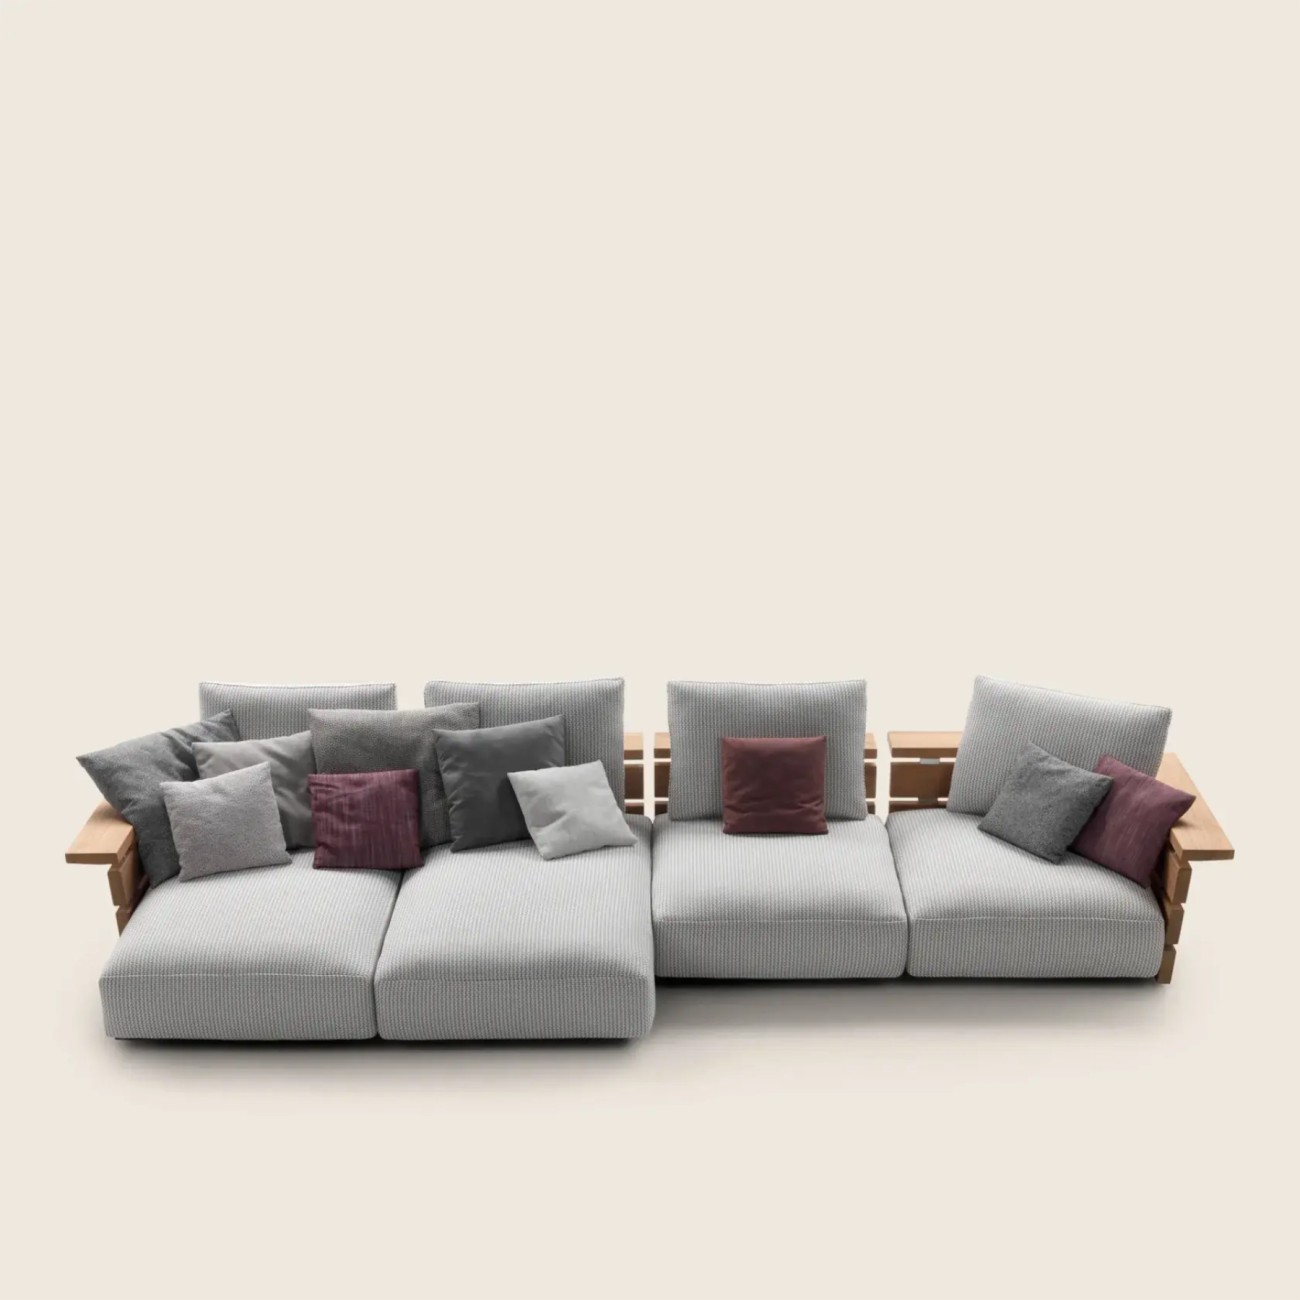 Ontario Outdoor Modular Sofa Flexform